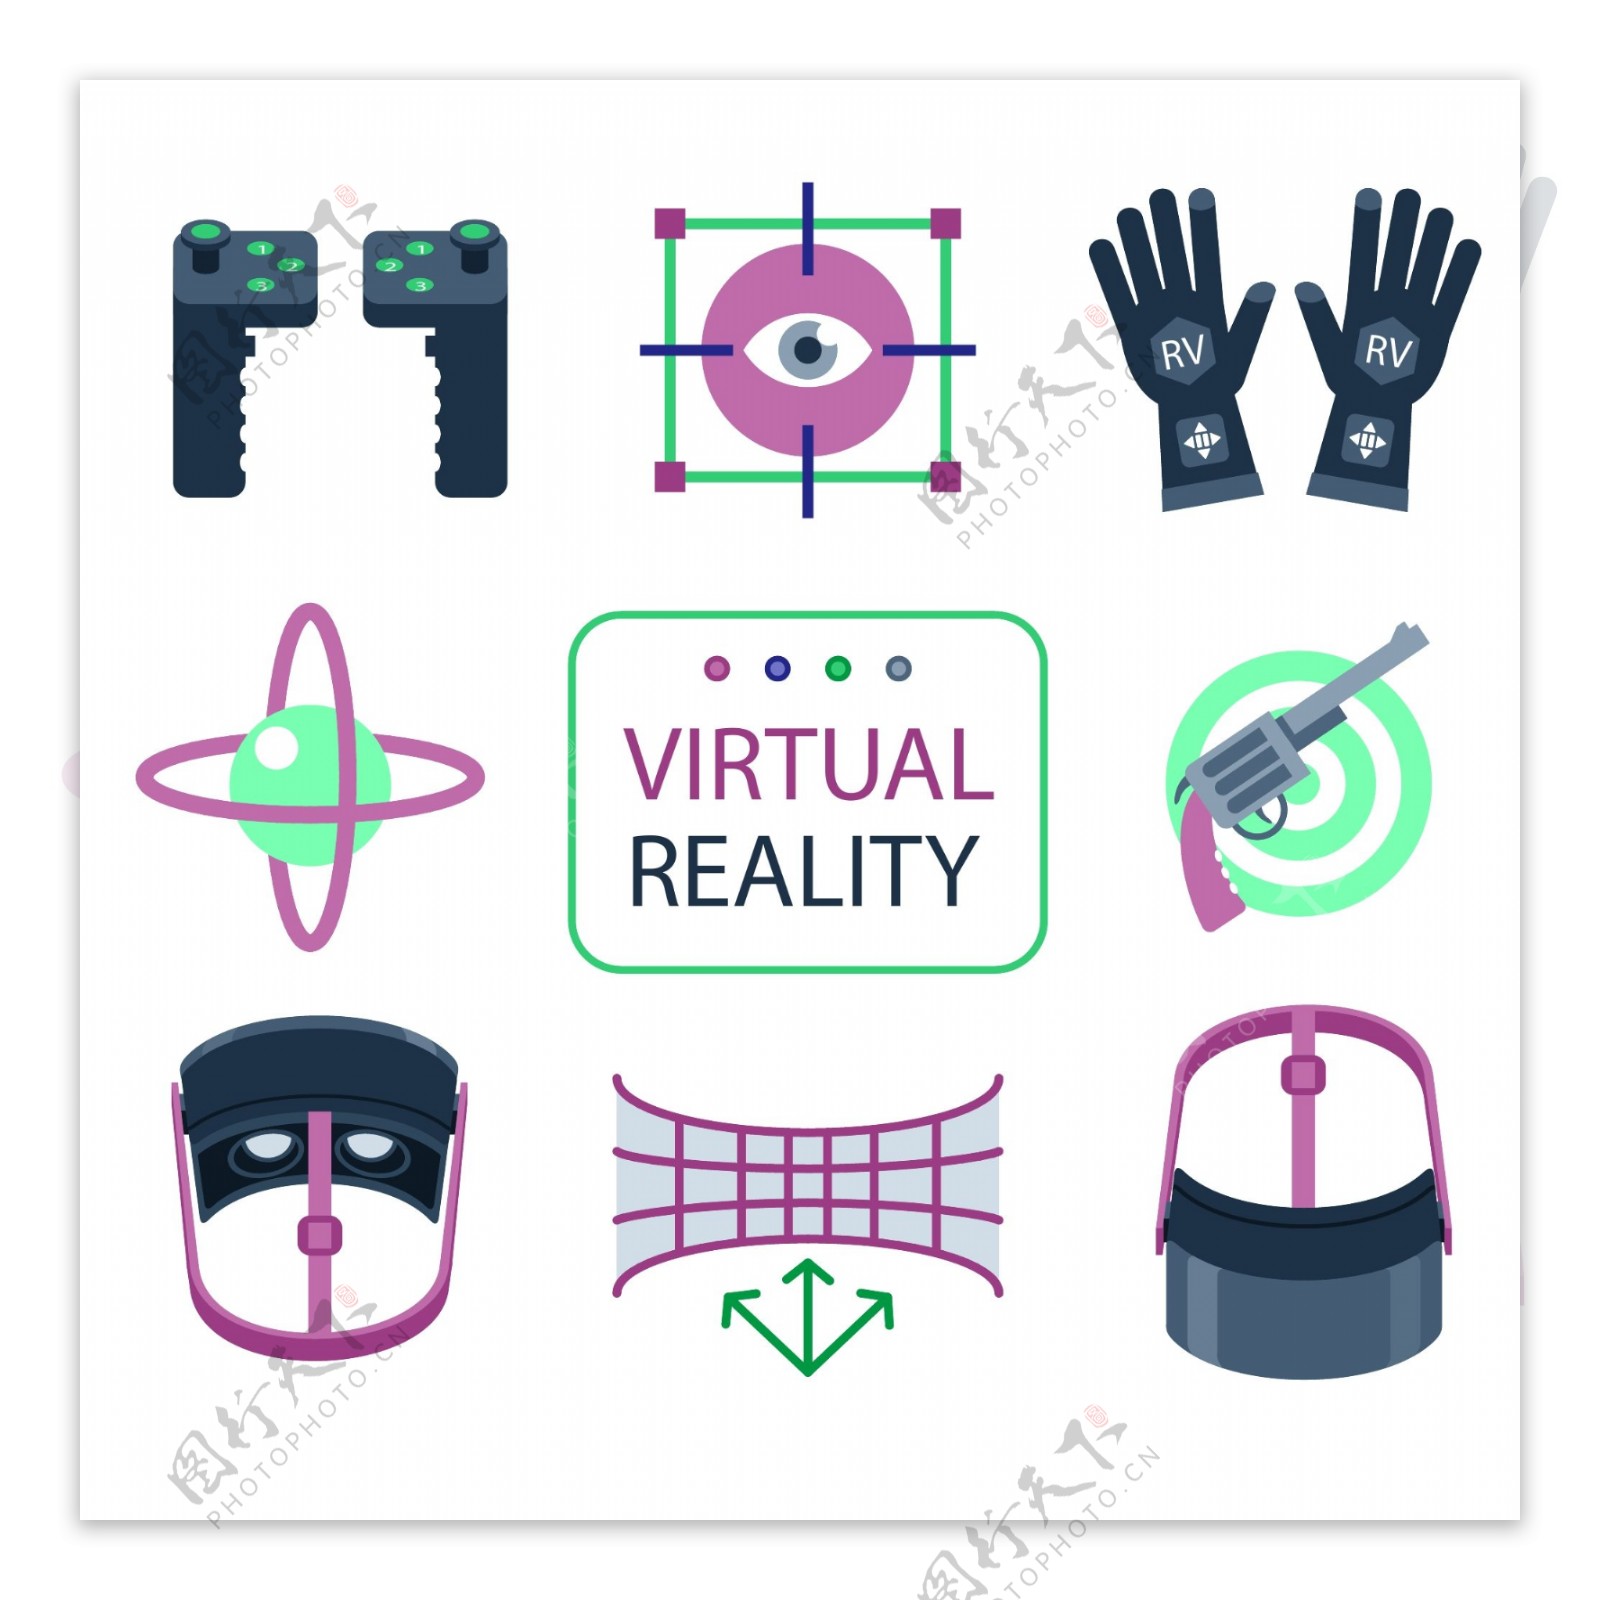 VR虚拟现实眼镜游戏配件元素